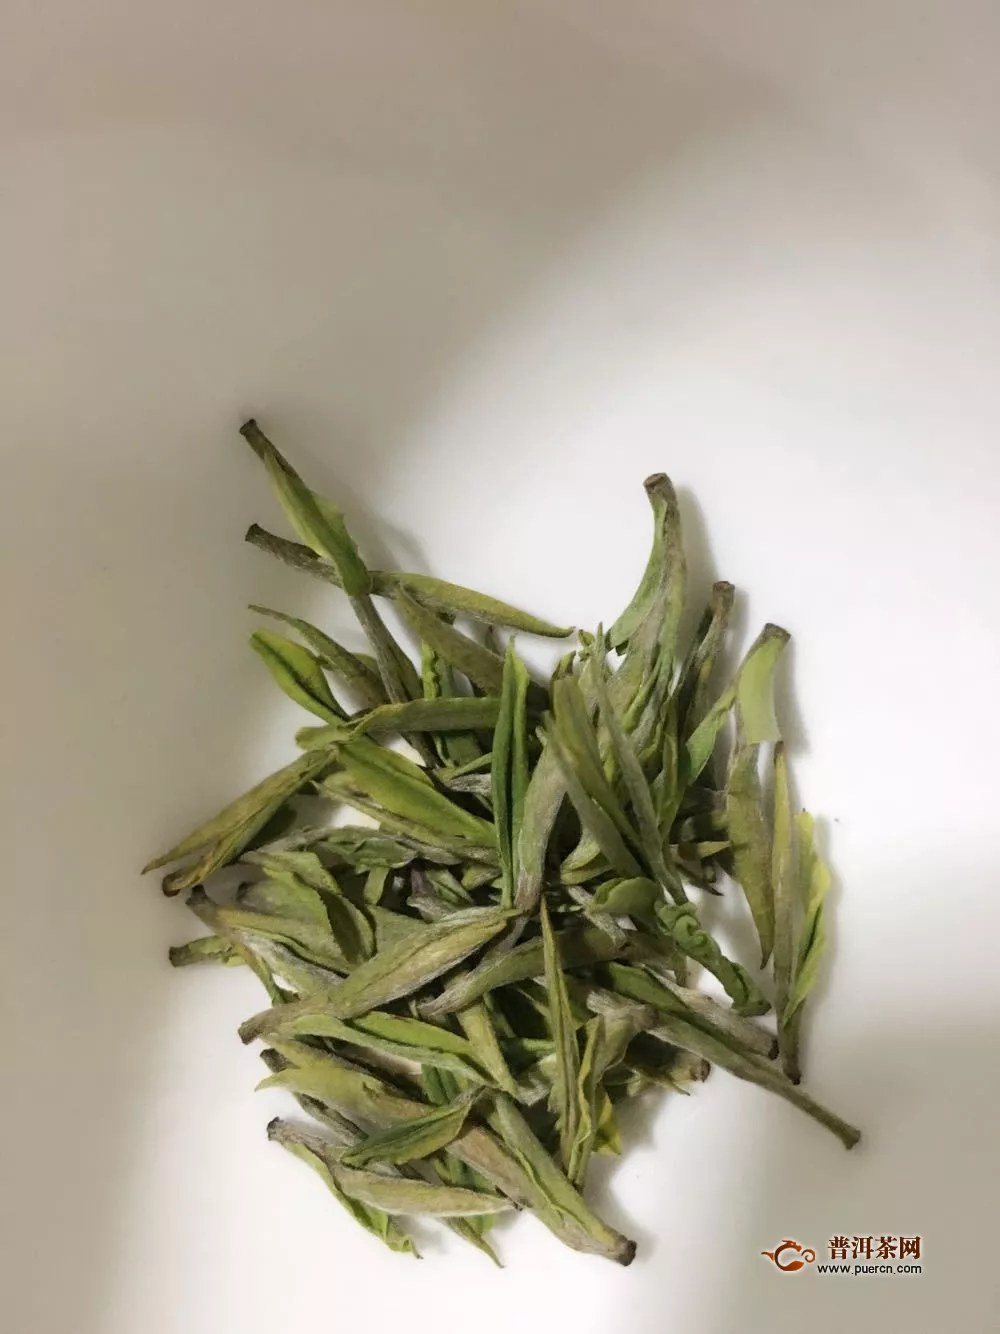 茅山青峰茶的贮藏方法